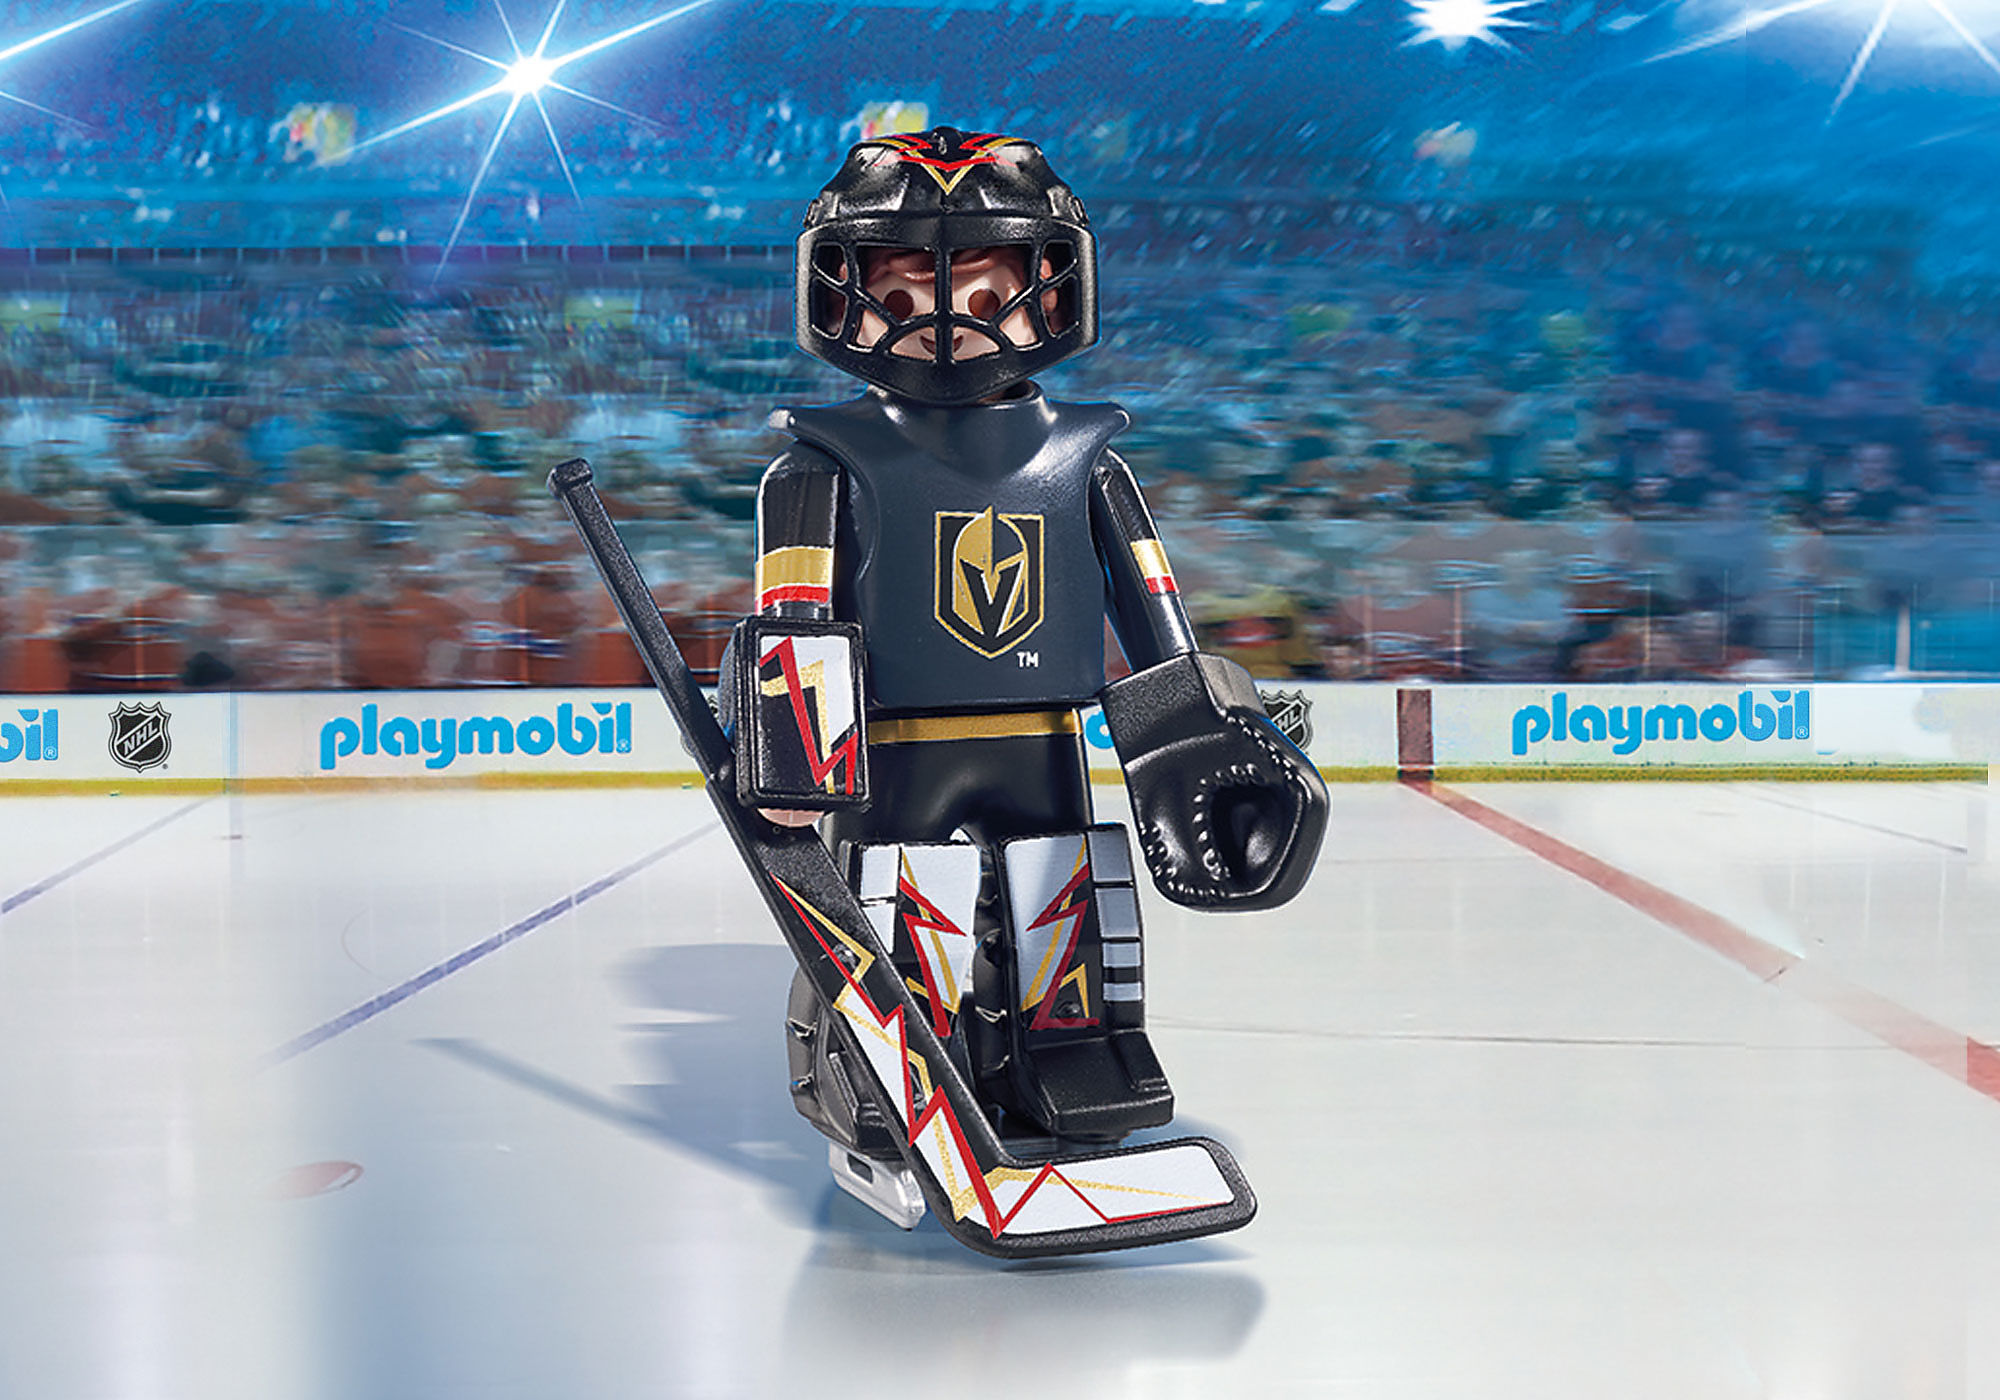 Vegas Sports & Hockey, Retail company